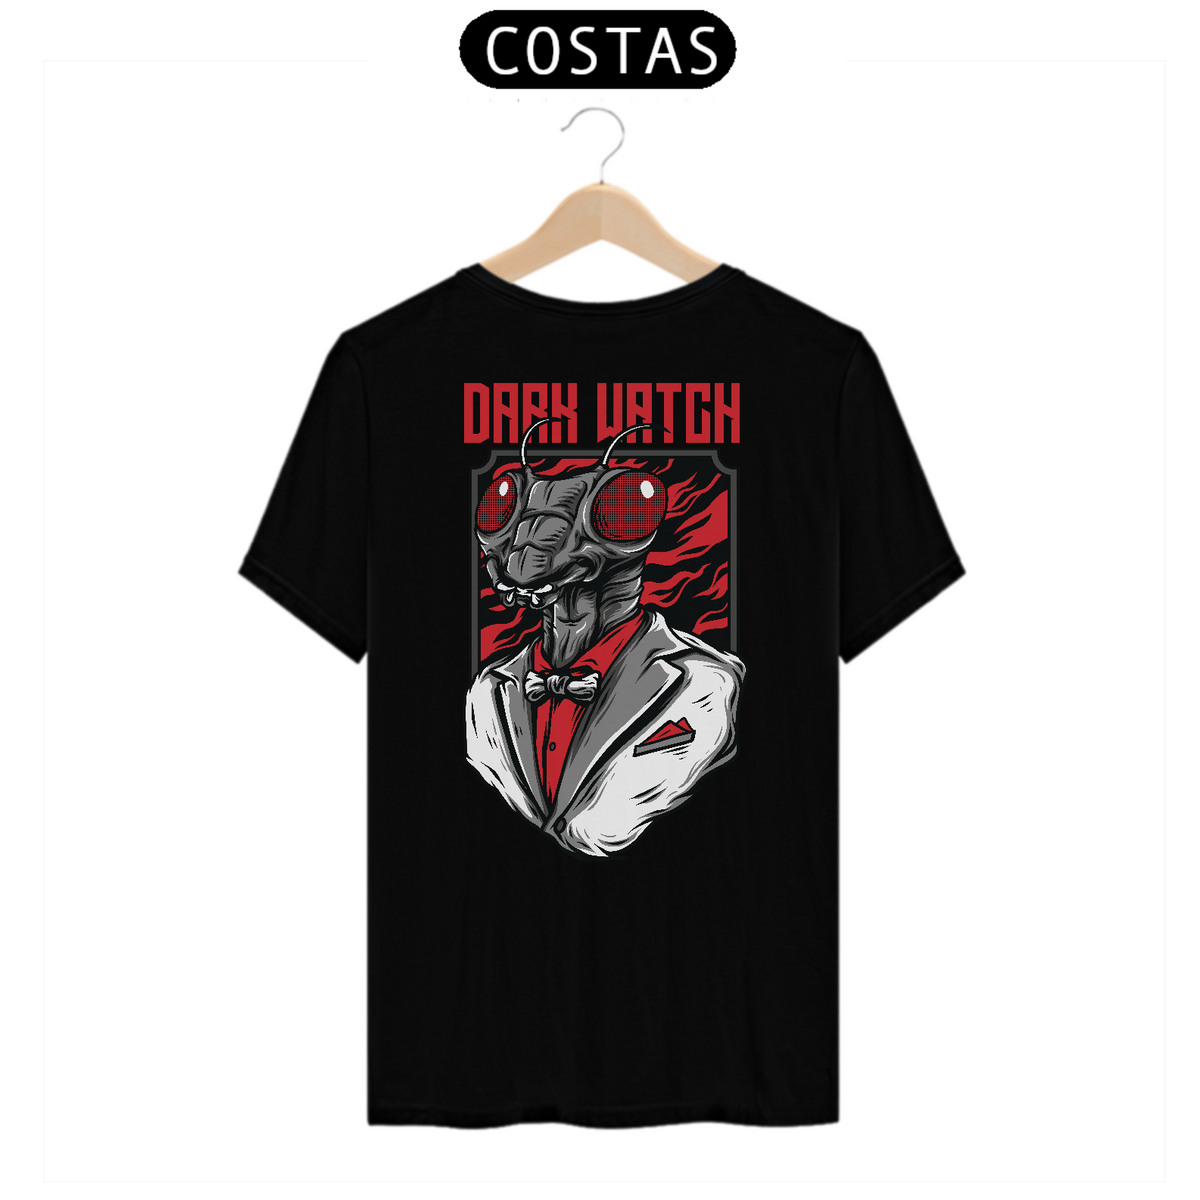 Nome do produto: Camiseta Dark Watgh